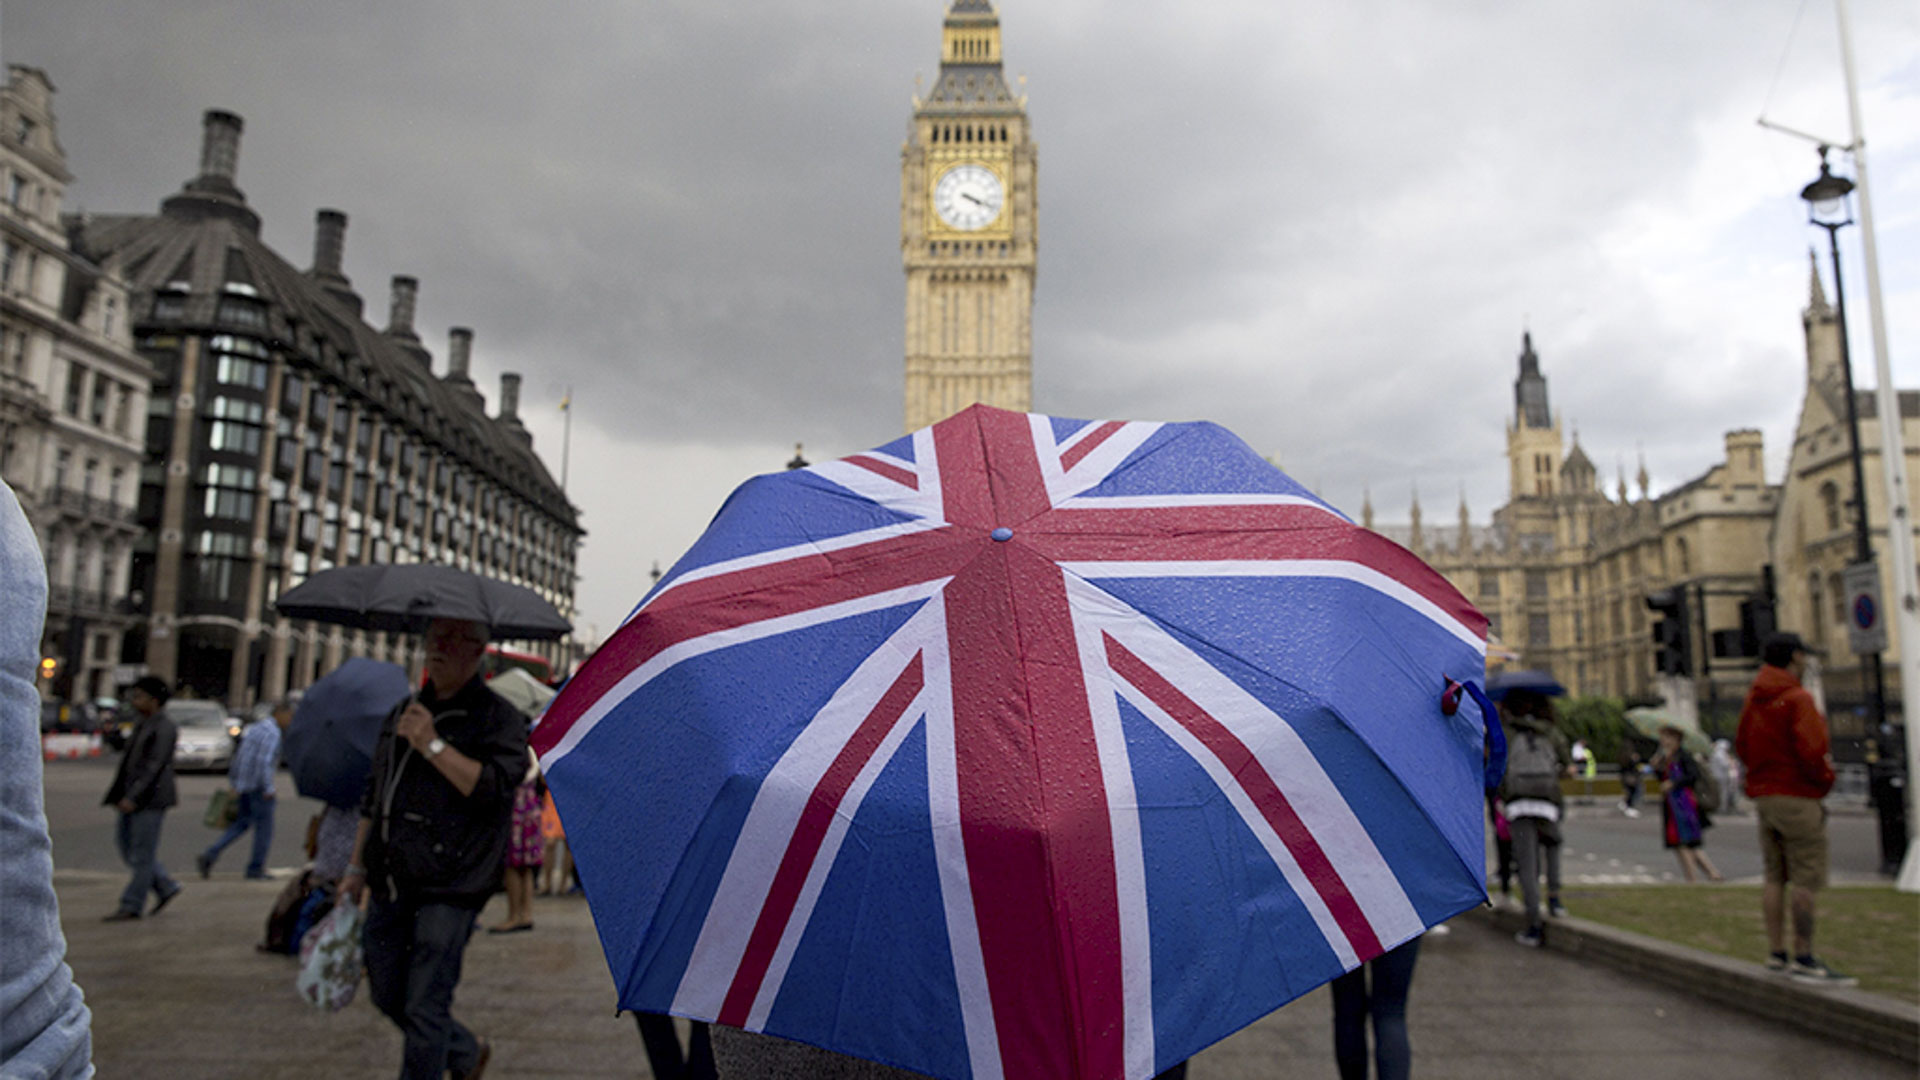 Ein aufgespannter Regenschirm mit dem Muster der Flagge Großbritanniens vor dem Parlamentsgebäude in London | AFP